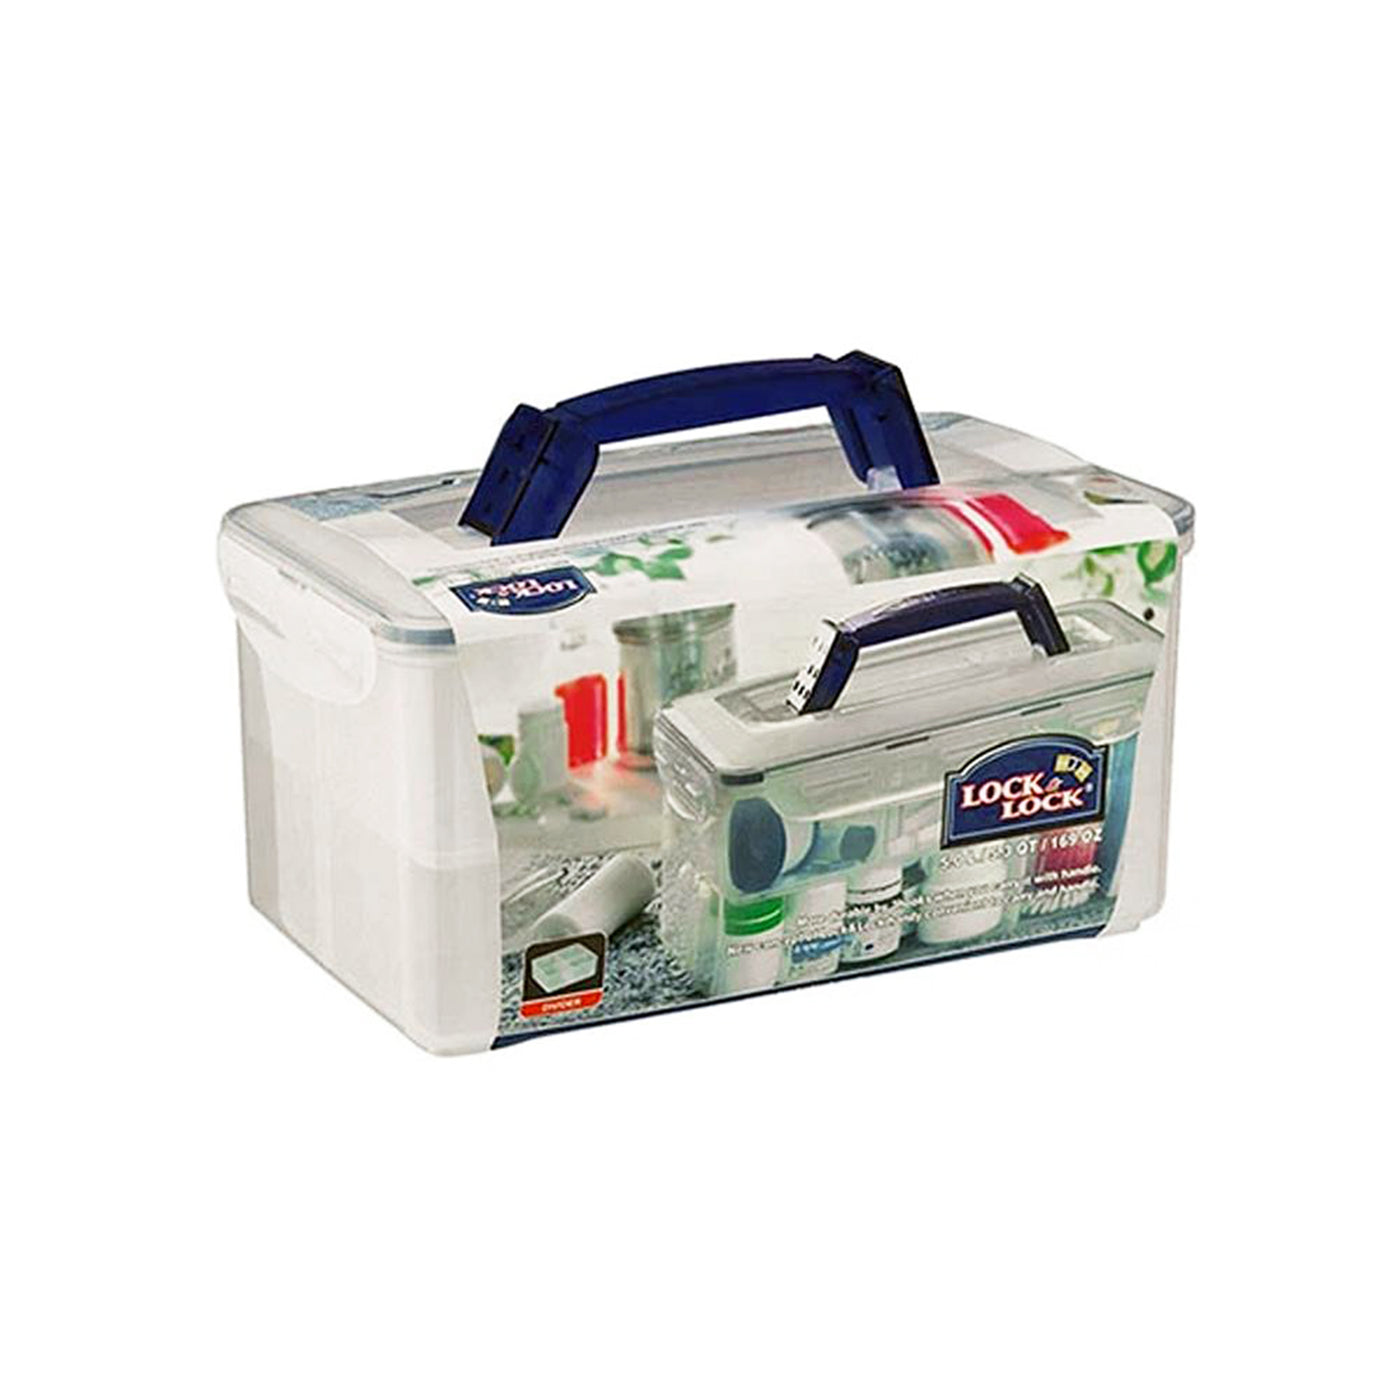 Classic First Aid Kit Box - 5LTR